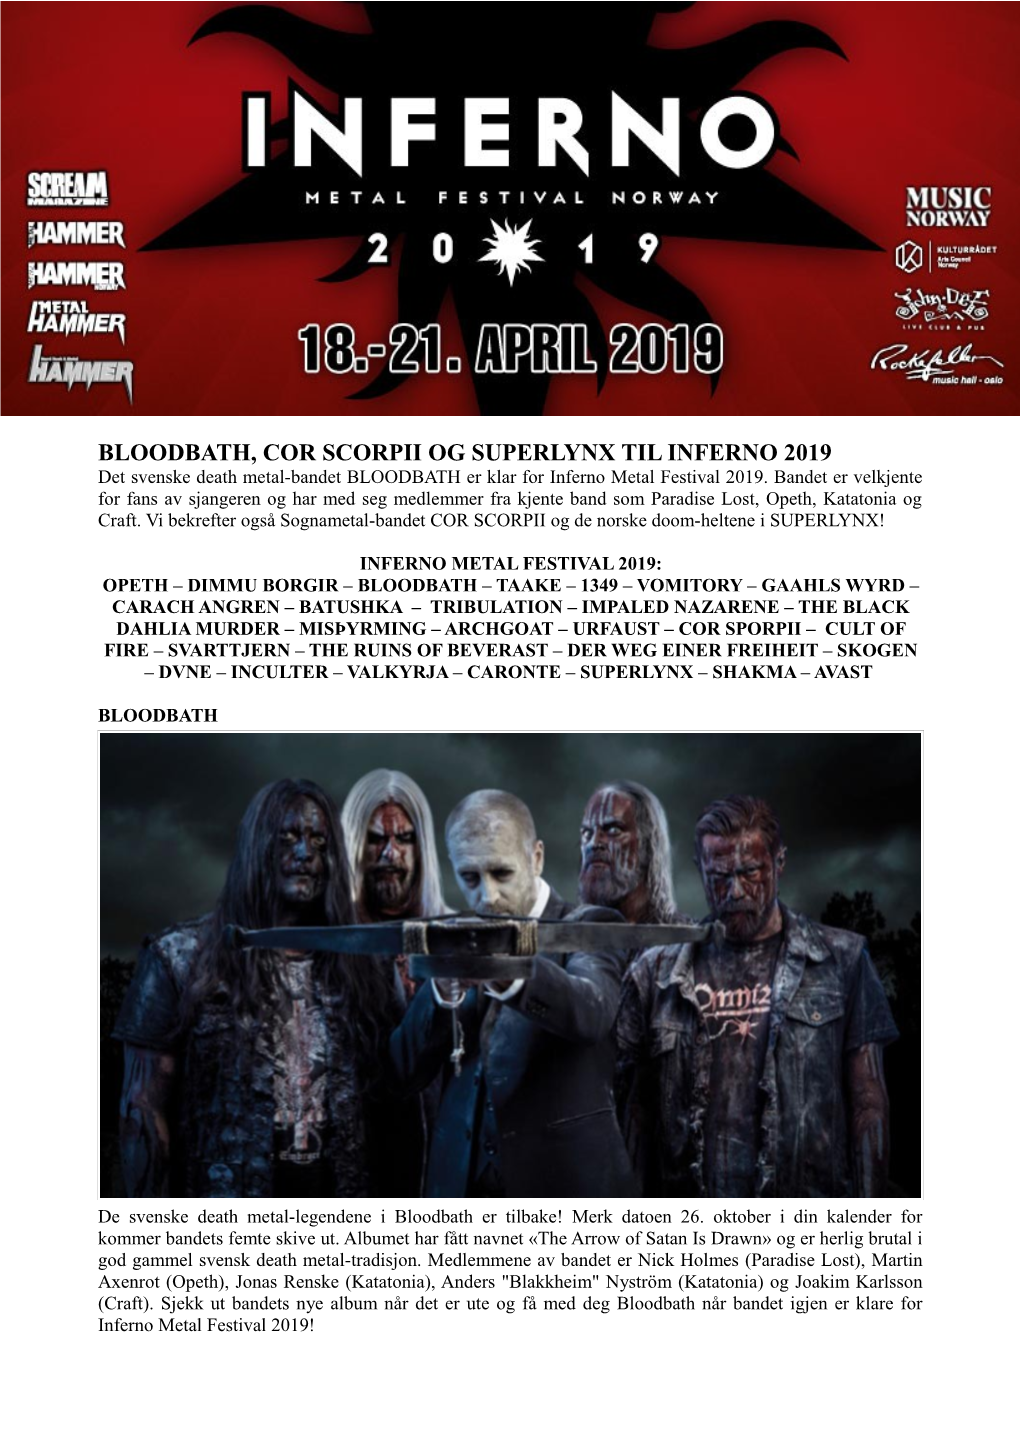 BLOODBATH, COR SCORPII OG SUPERLYNX TIL INFERNO 2019 Det Svenske Death Metal-Bandet BLOODBATH Er Klar for Inferno Metal Festival 2019